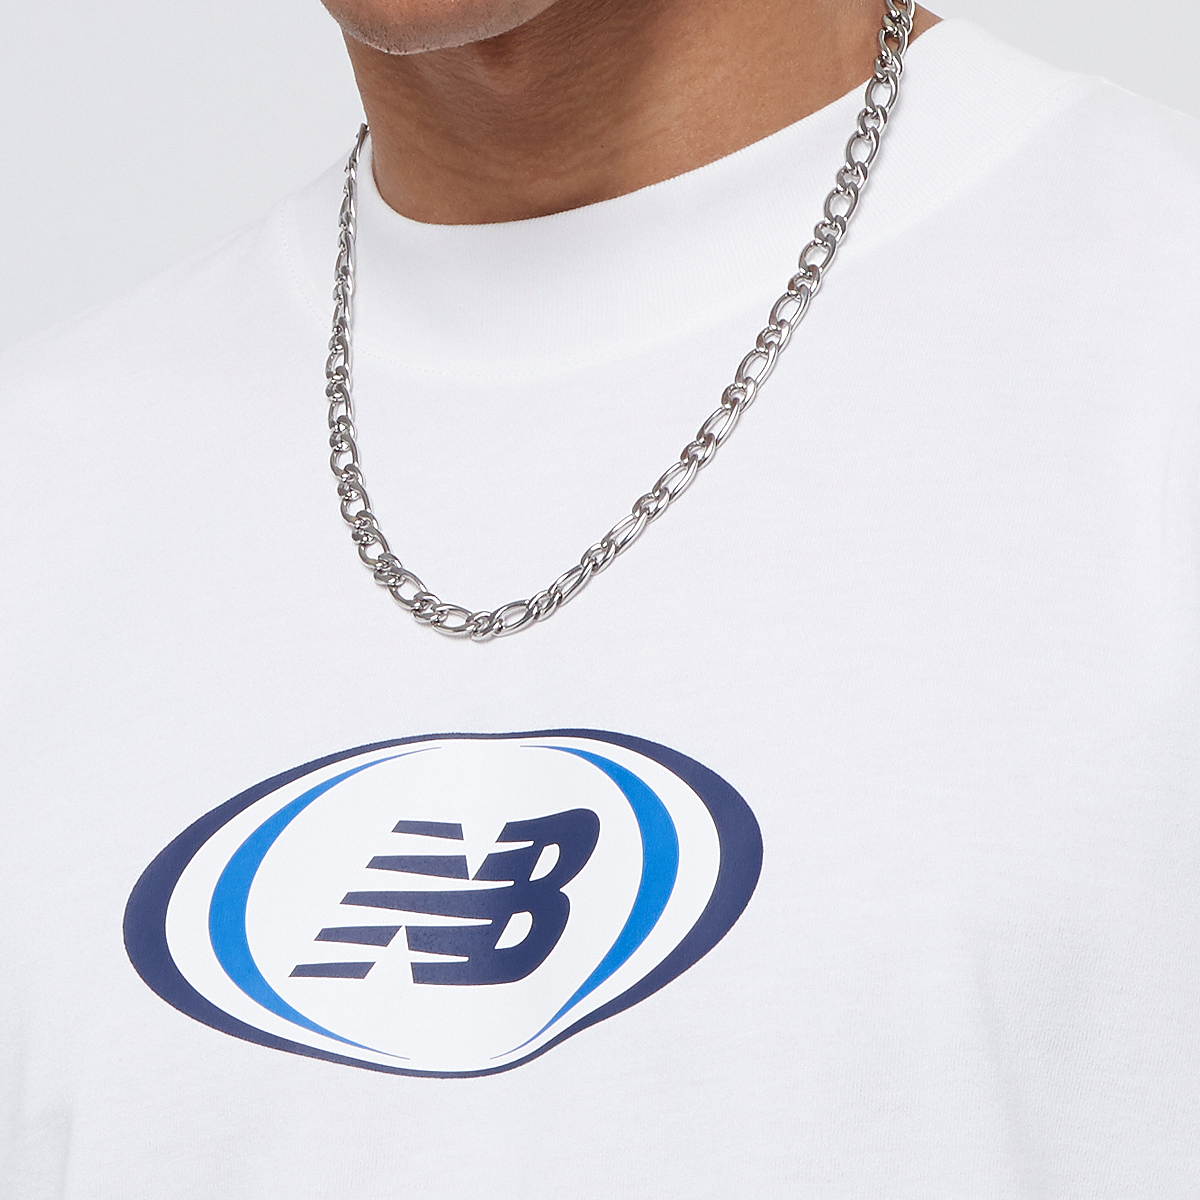 New Balance Hoops On Court T-shirt T-shirts Heren white maat: S beschikbare maaten:S M L XL